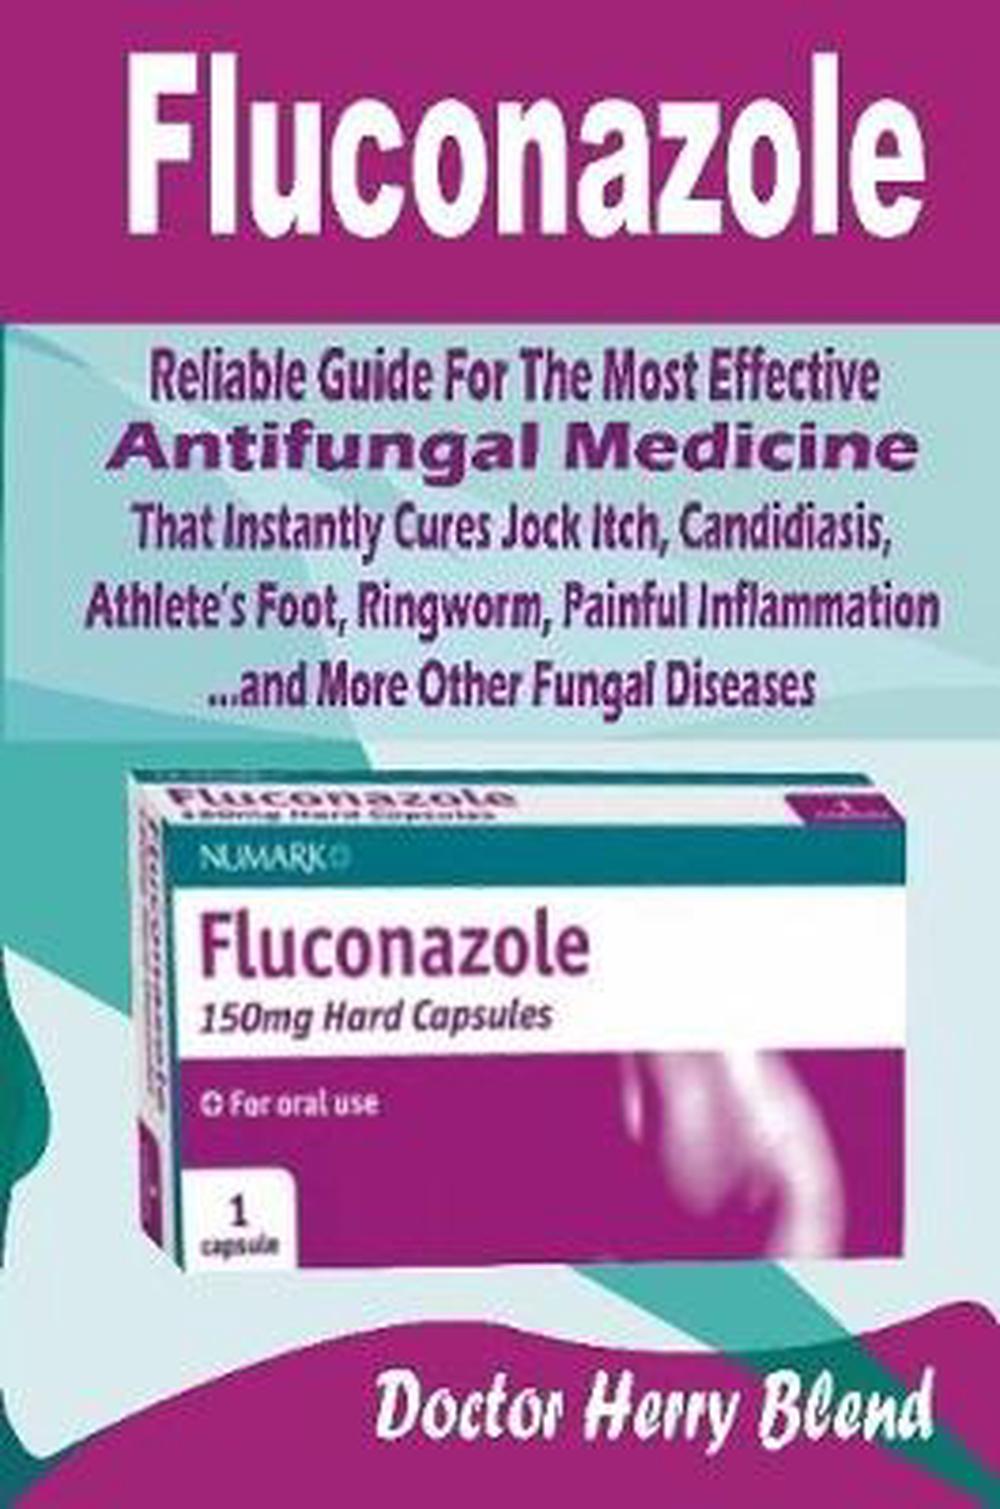 is it ok to take fluconazole while on antibiotics